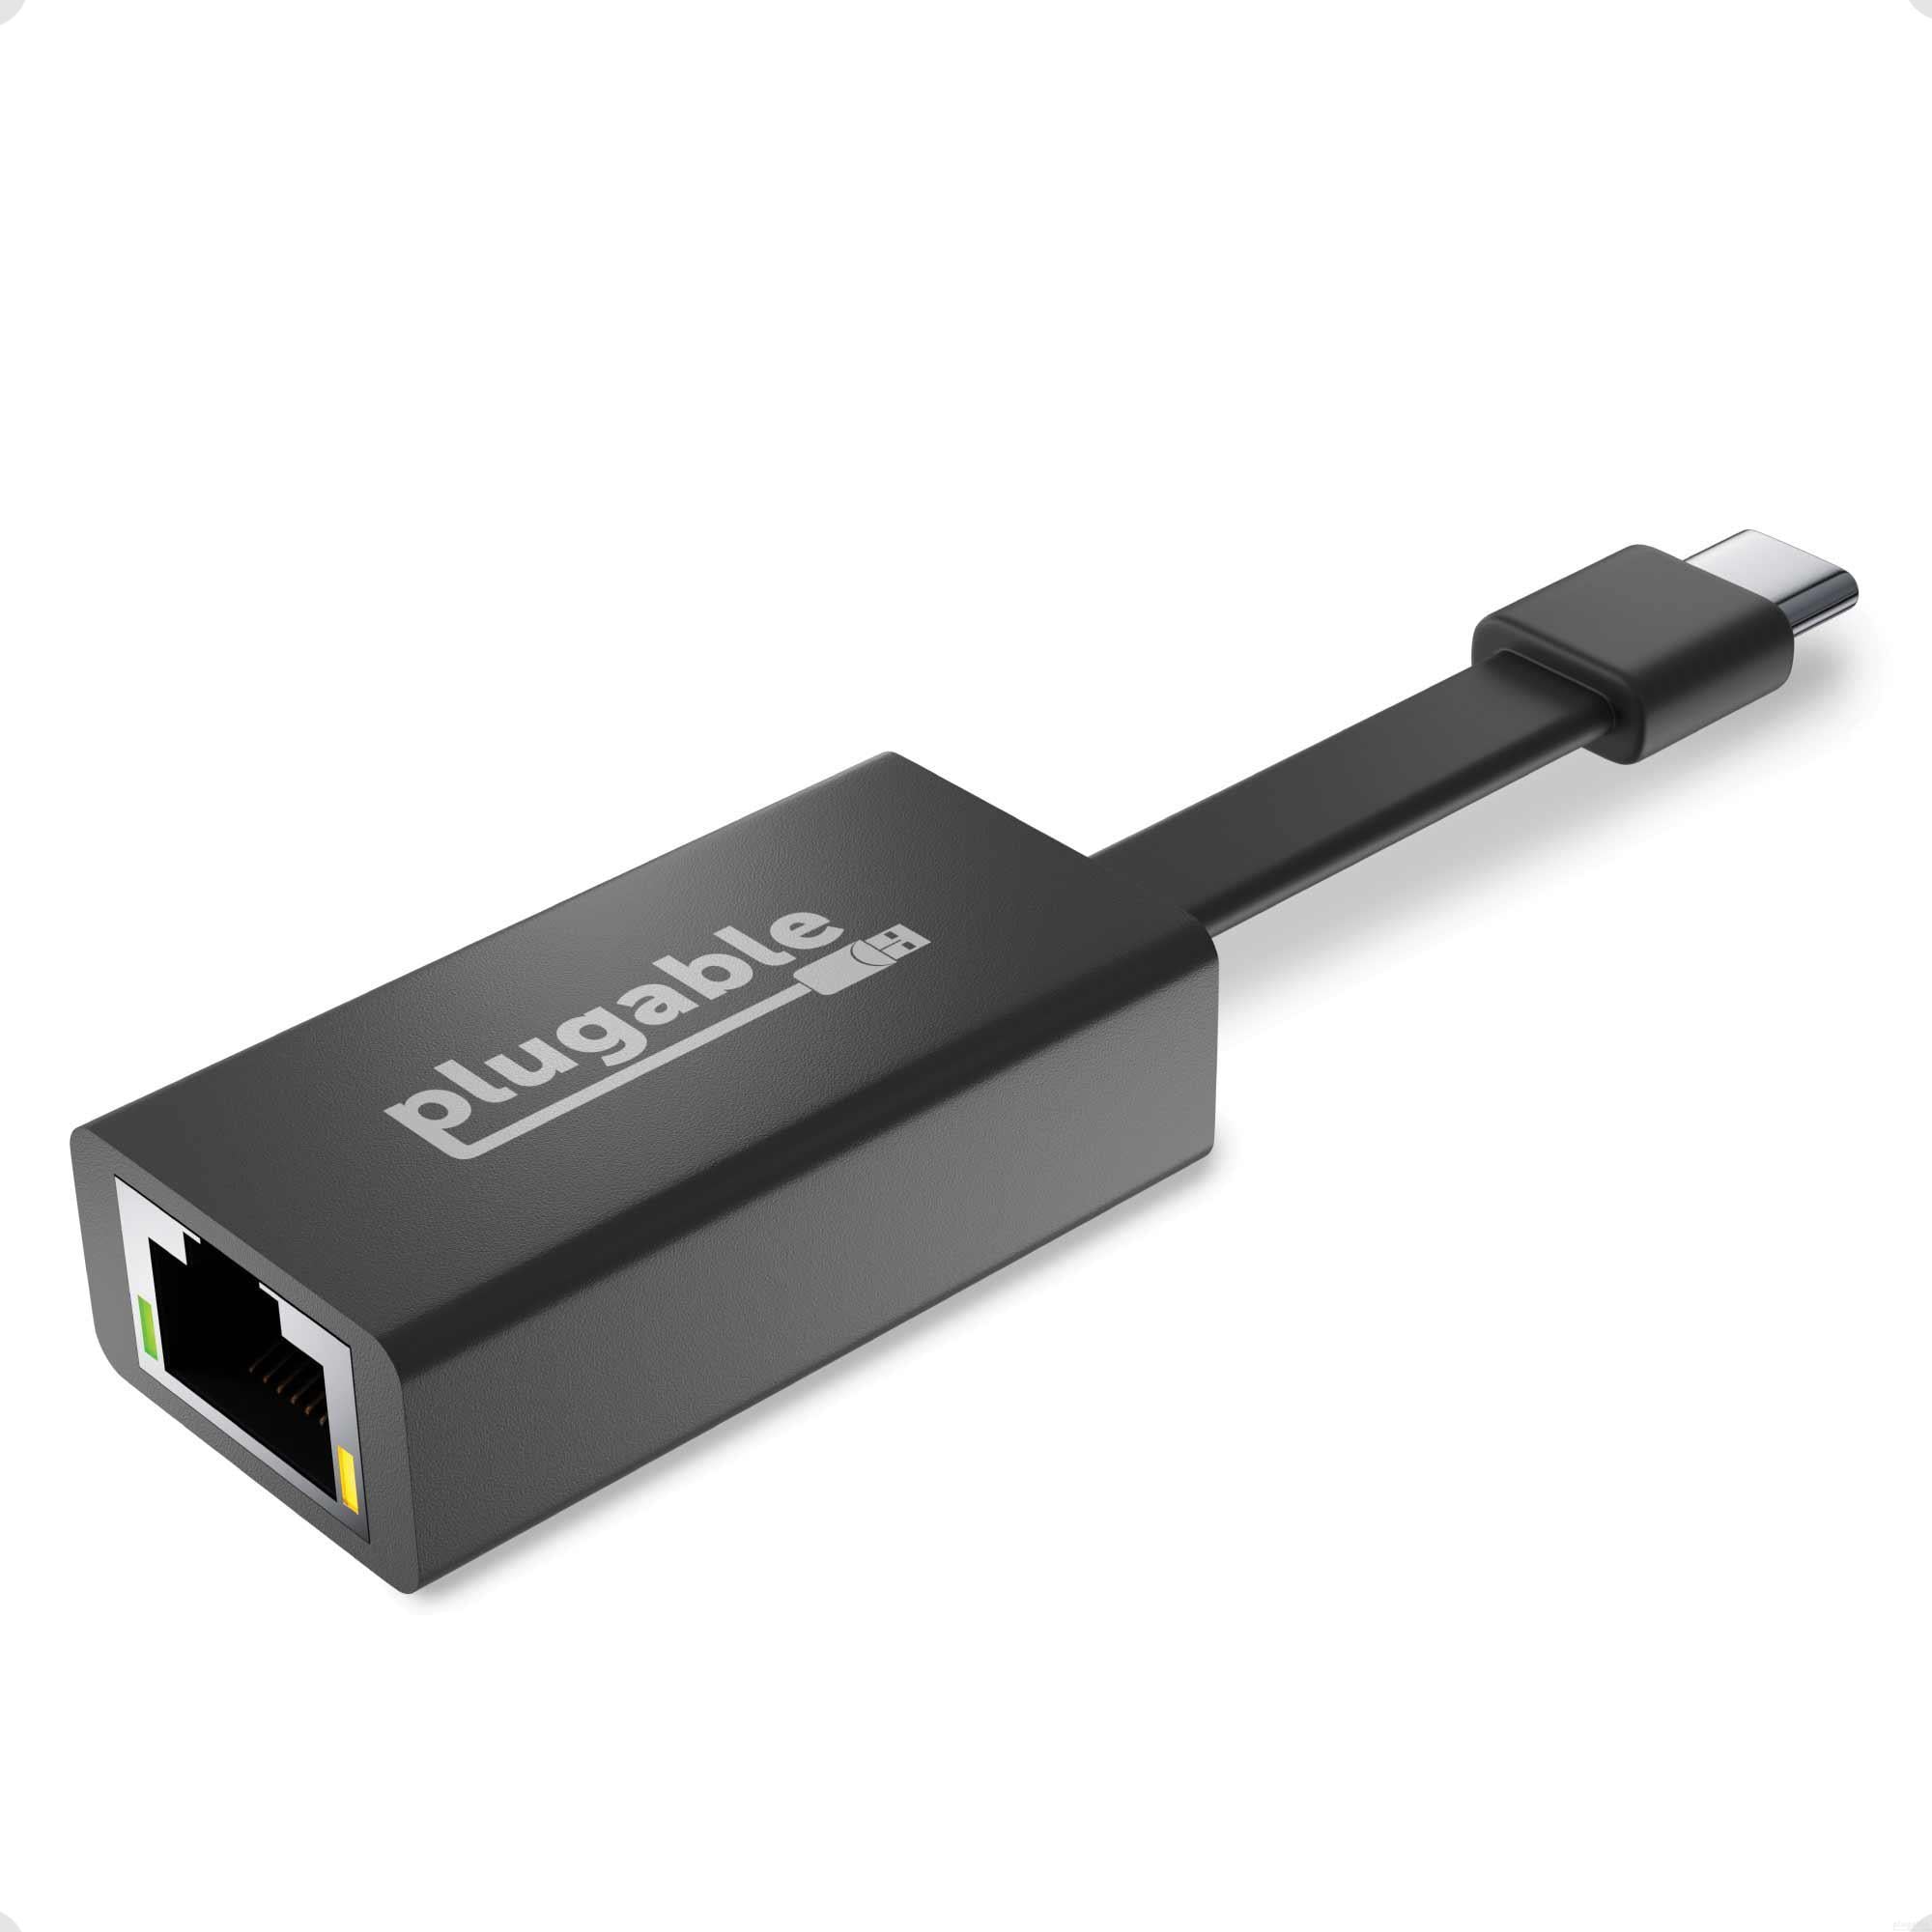 Plugable USB-C 有線 LAN ギガビット ネットワークアダプター フラットケーブル付き